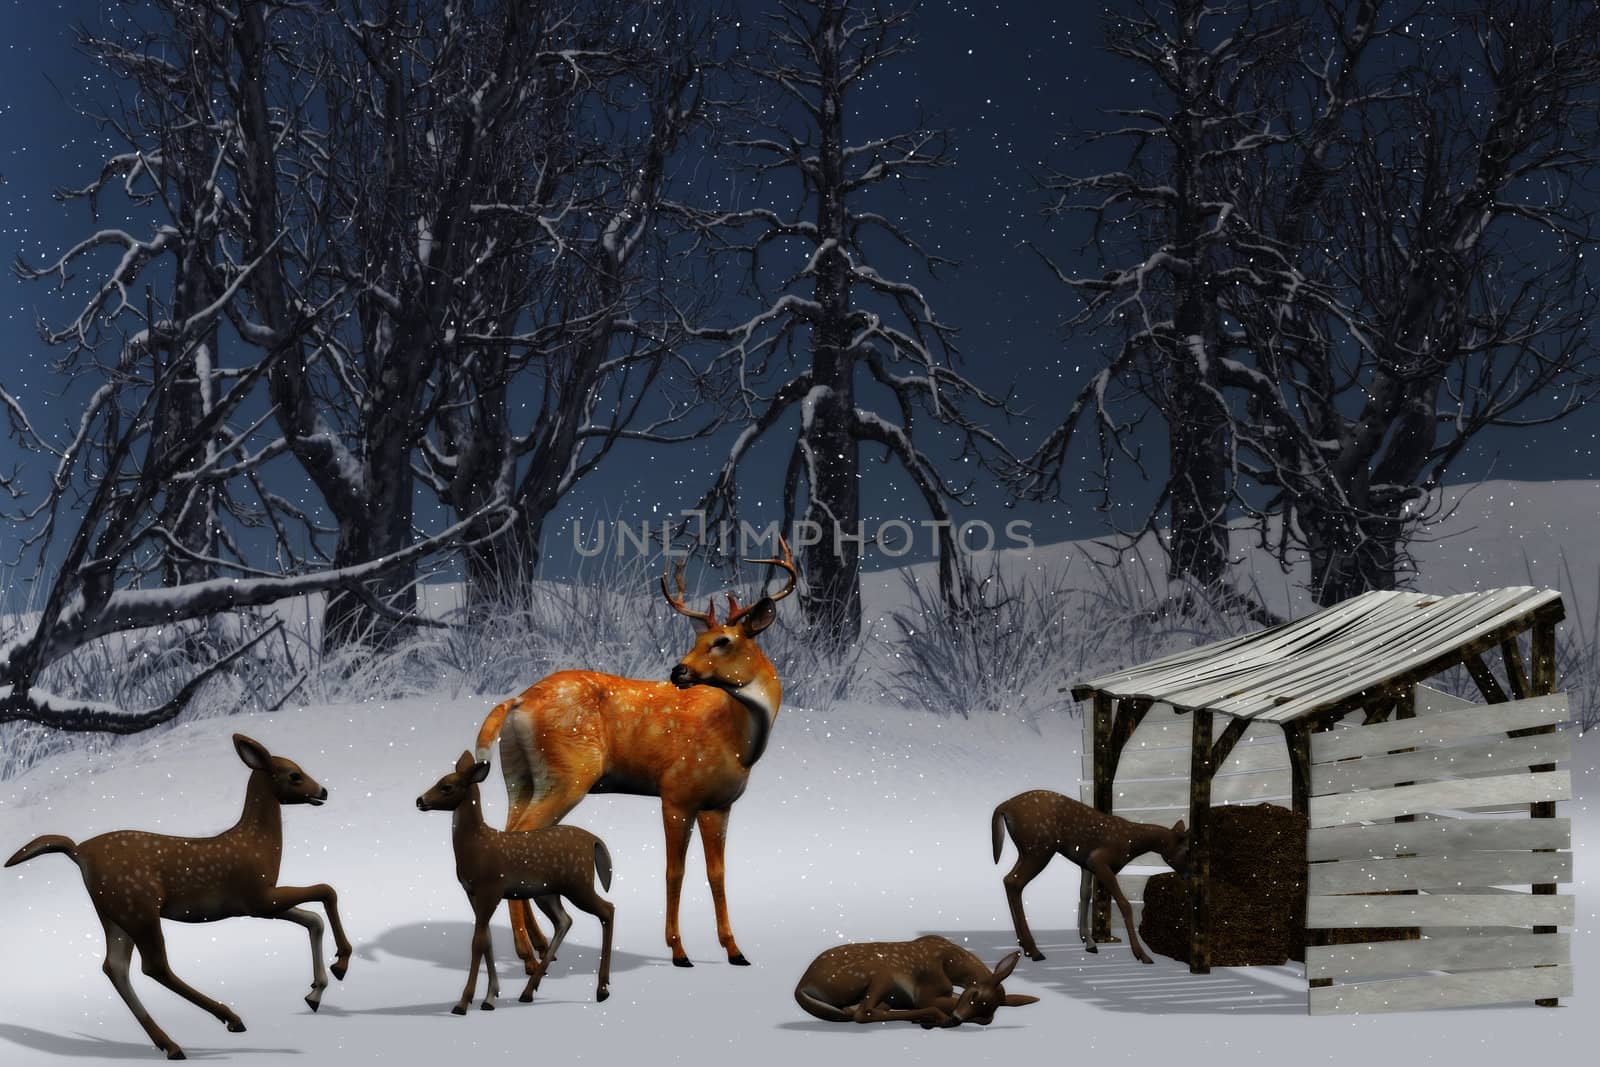 Feeding of deer in a winter landscape